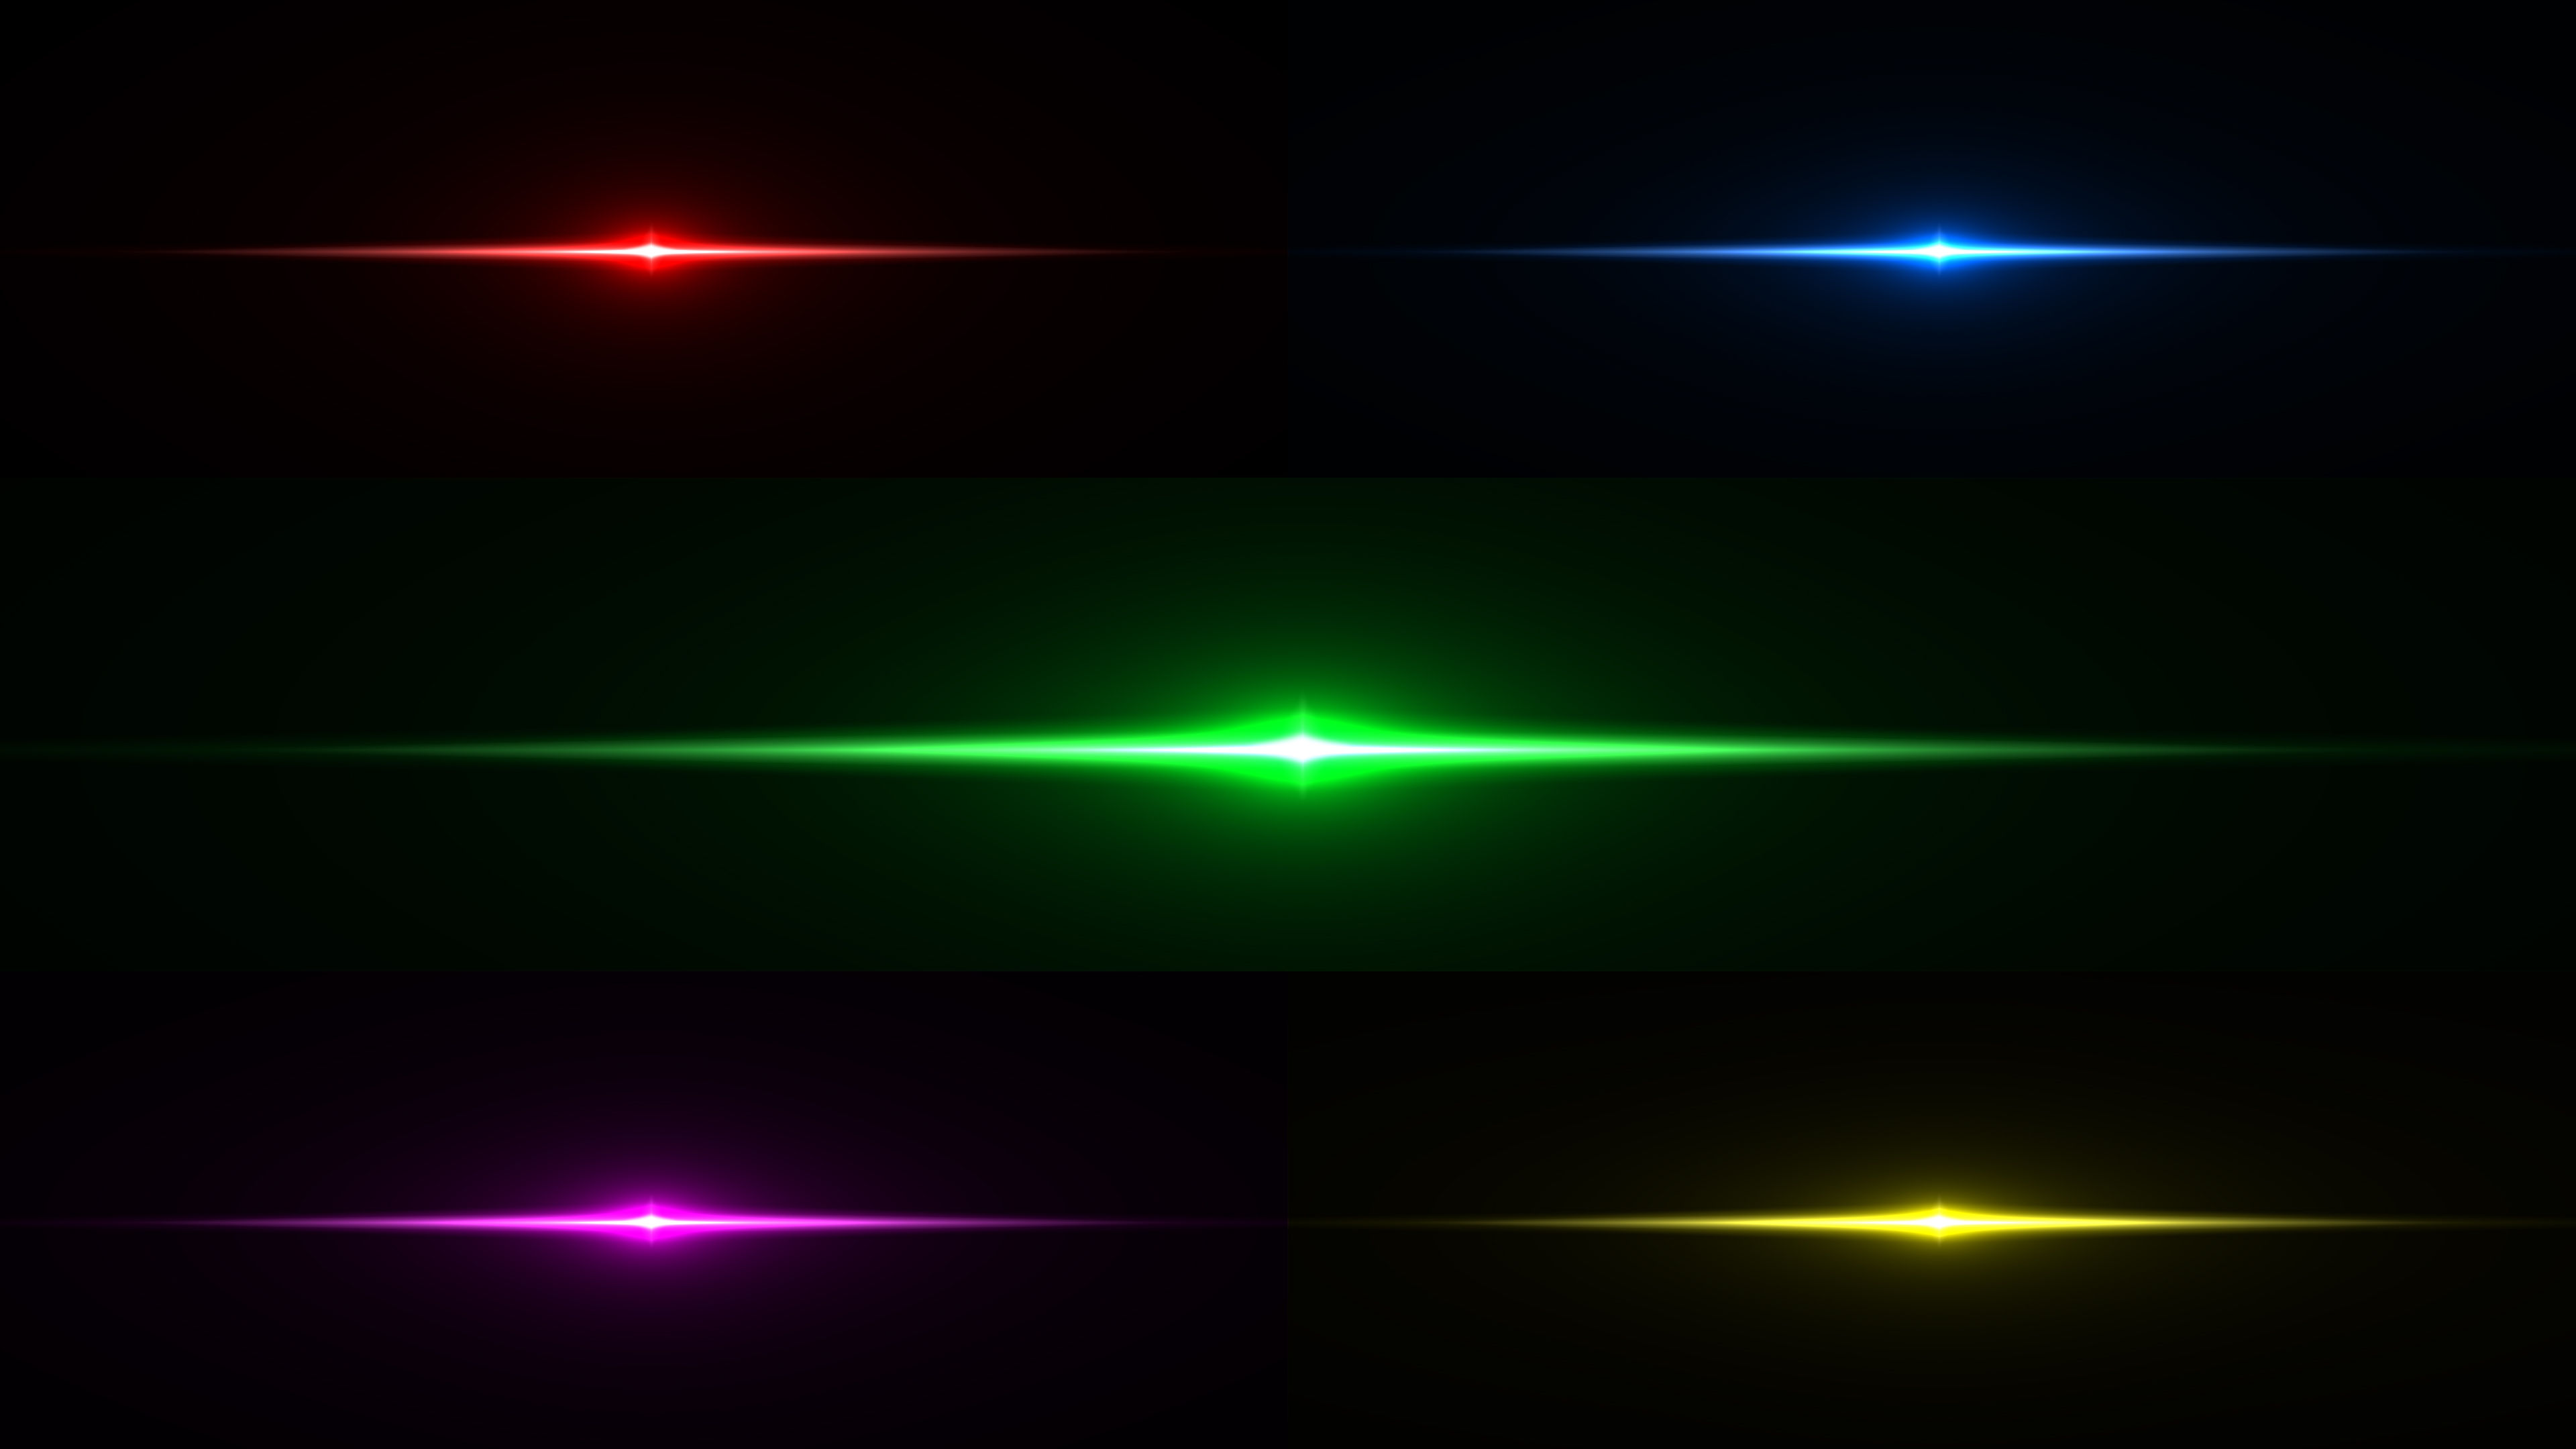 五组颜色抖音红眼激光闪光特效,带bgm,带alpha透明通道,mp4和mov两种